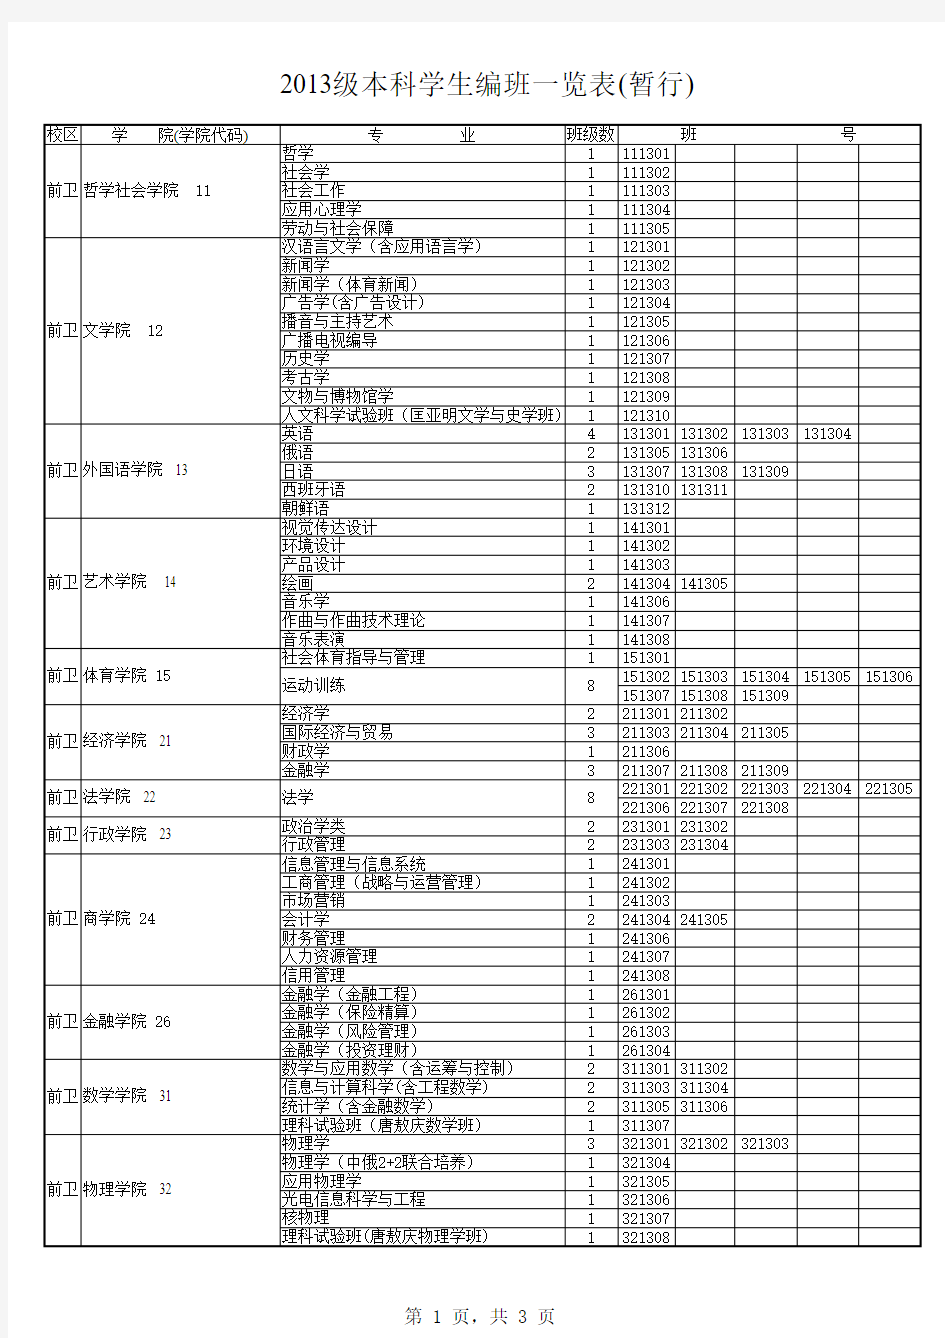 吉林大学2013级本科学生编班一览表(暂行).XLS